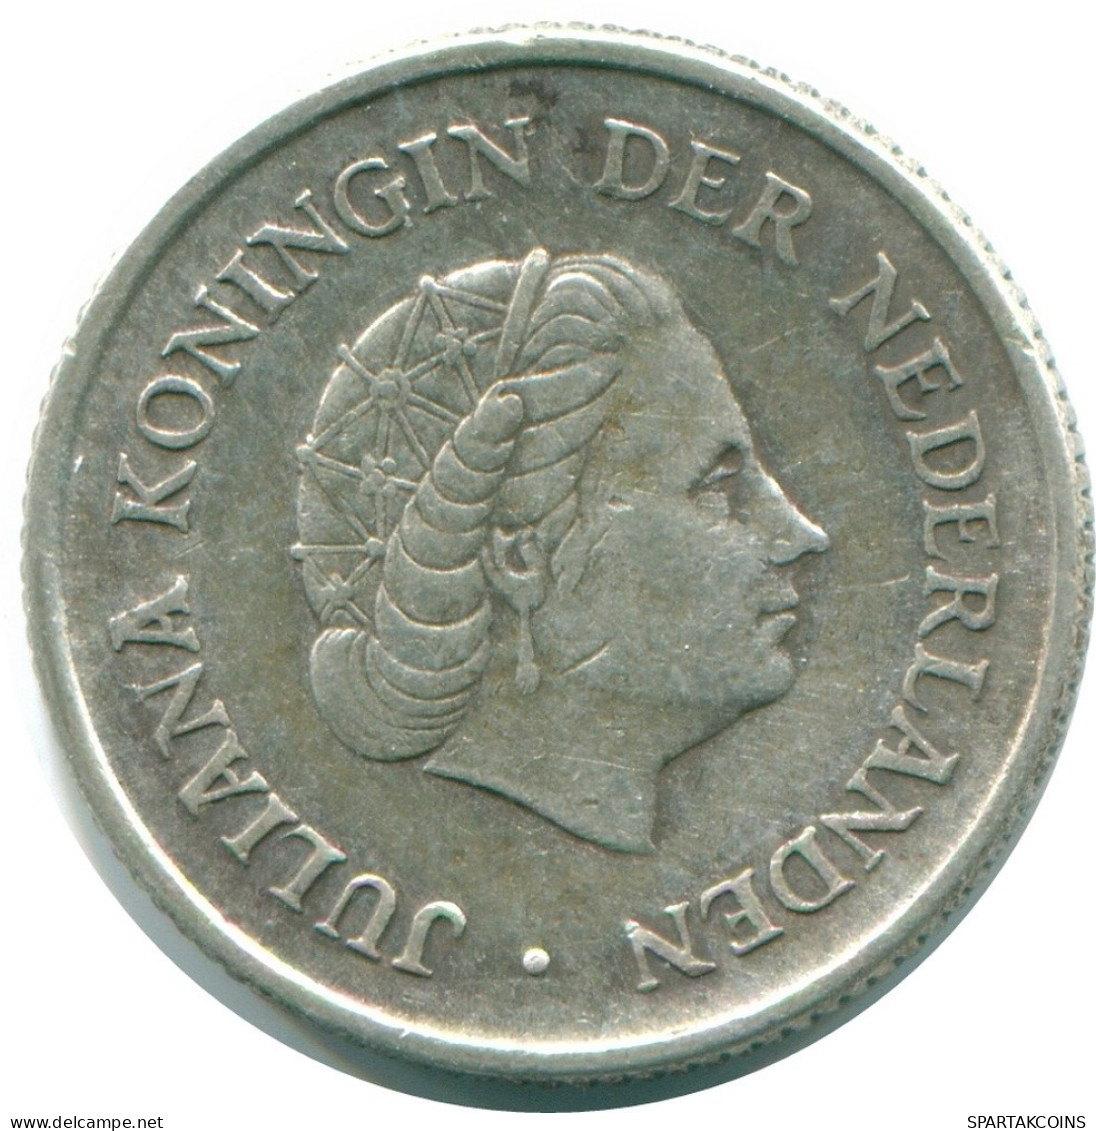 1/4 GULDEN 1965 NIEDERLÄNDISCHE ANTILLEN SILBER Koloniale Münze #NL11398.4.D.A - Nederlandse Antillen